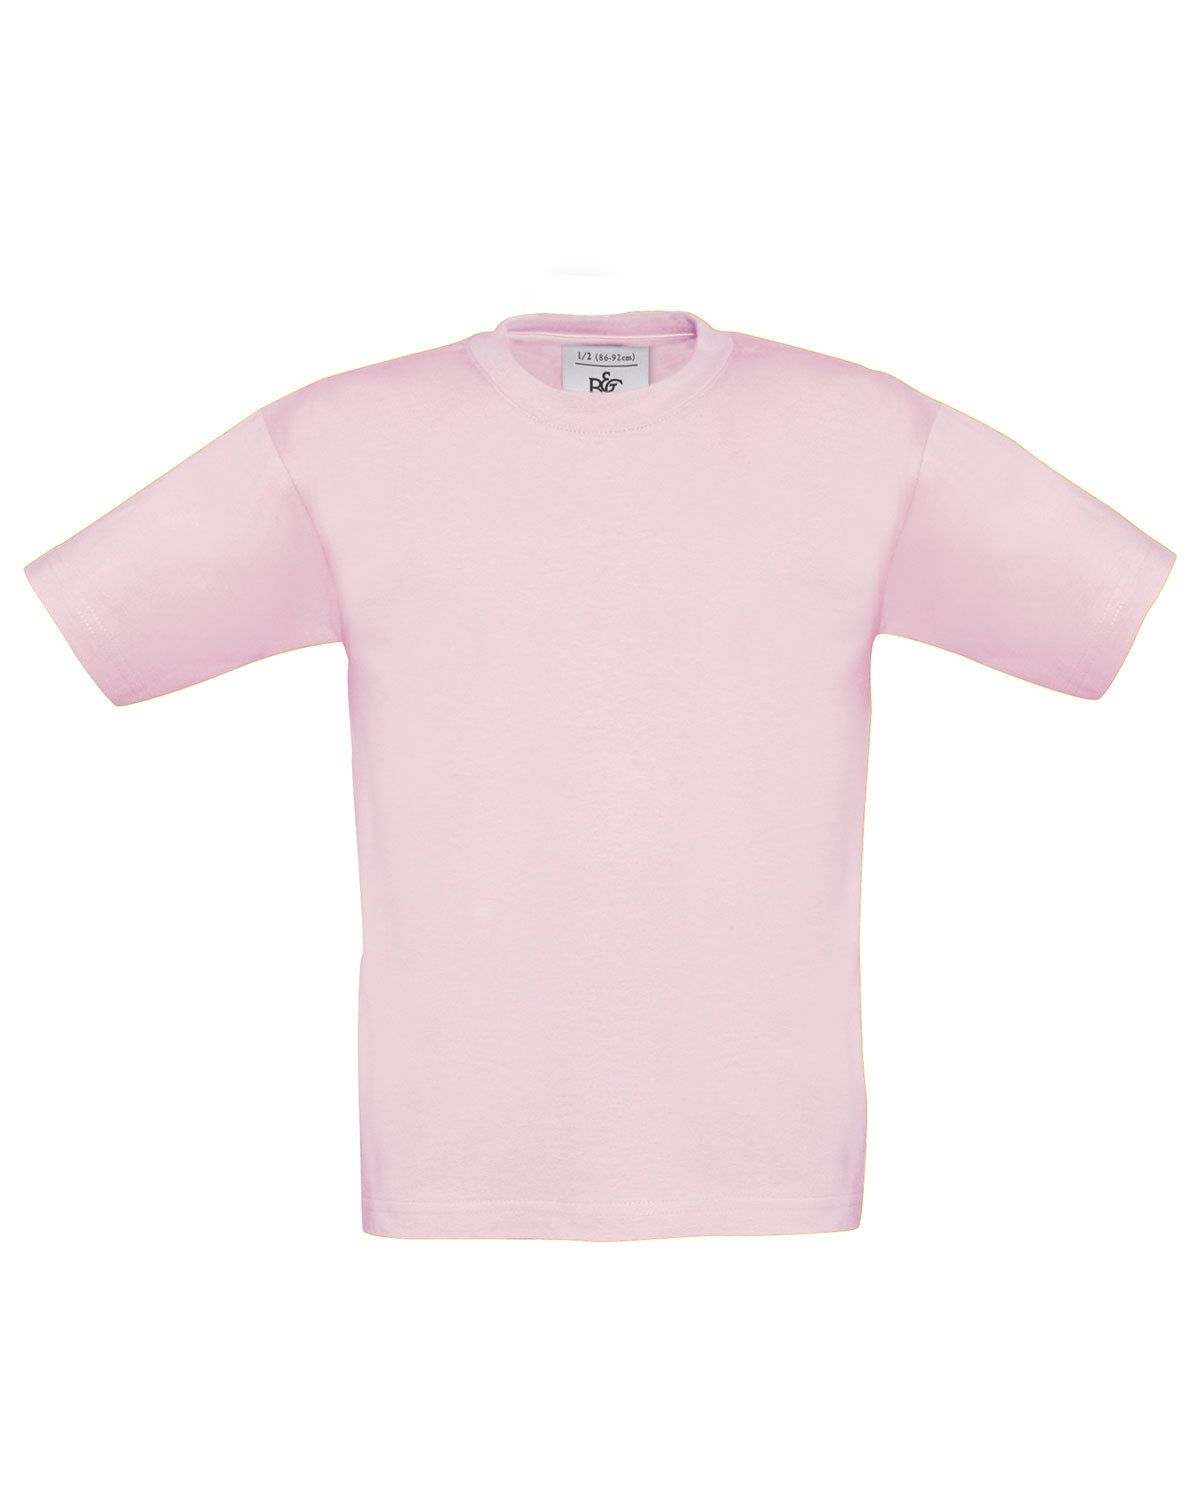 T-Shirt Exact 190 /kids Pink Sixties 152/164